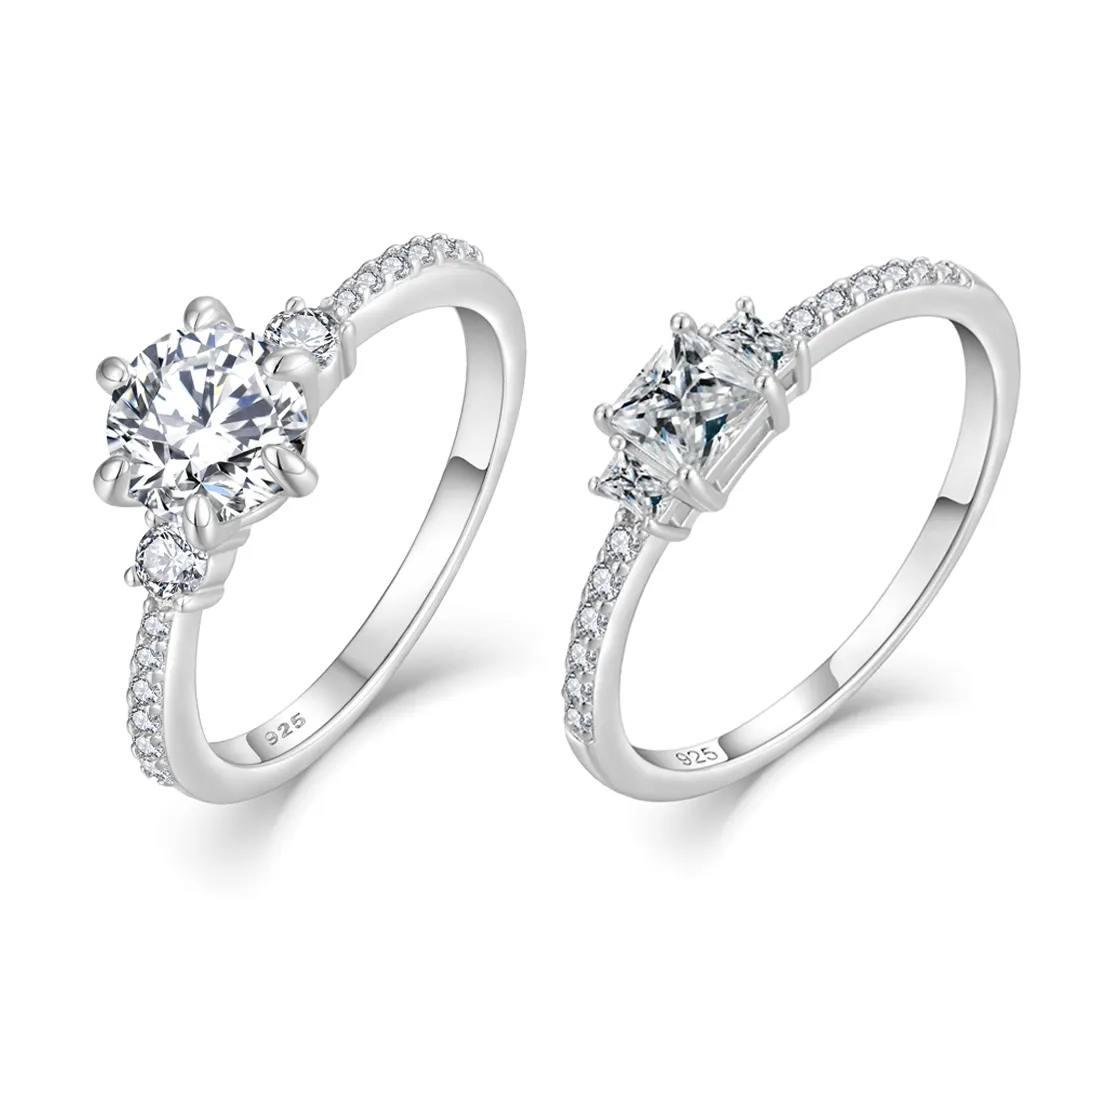 Luxus 925 Silber Solitaire Diamant Hochzeit Verlobungsring Original romantischer Baguette runder Ring Schmuck